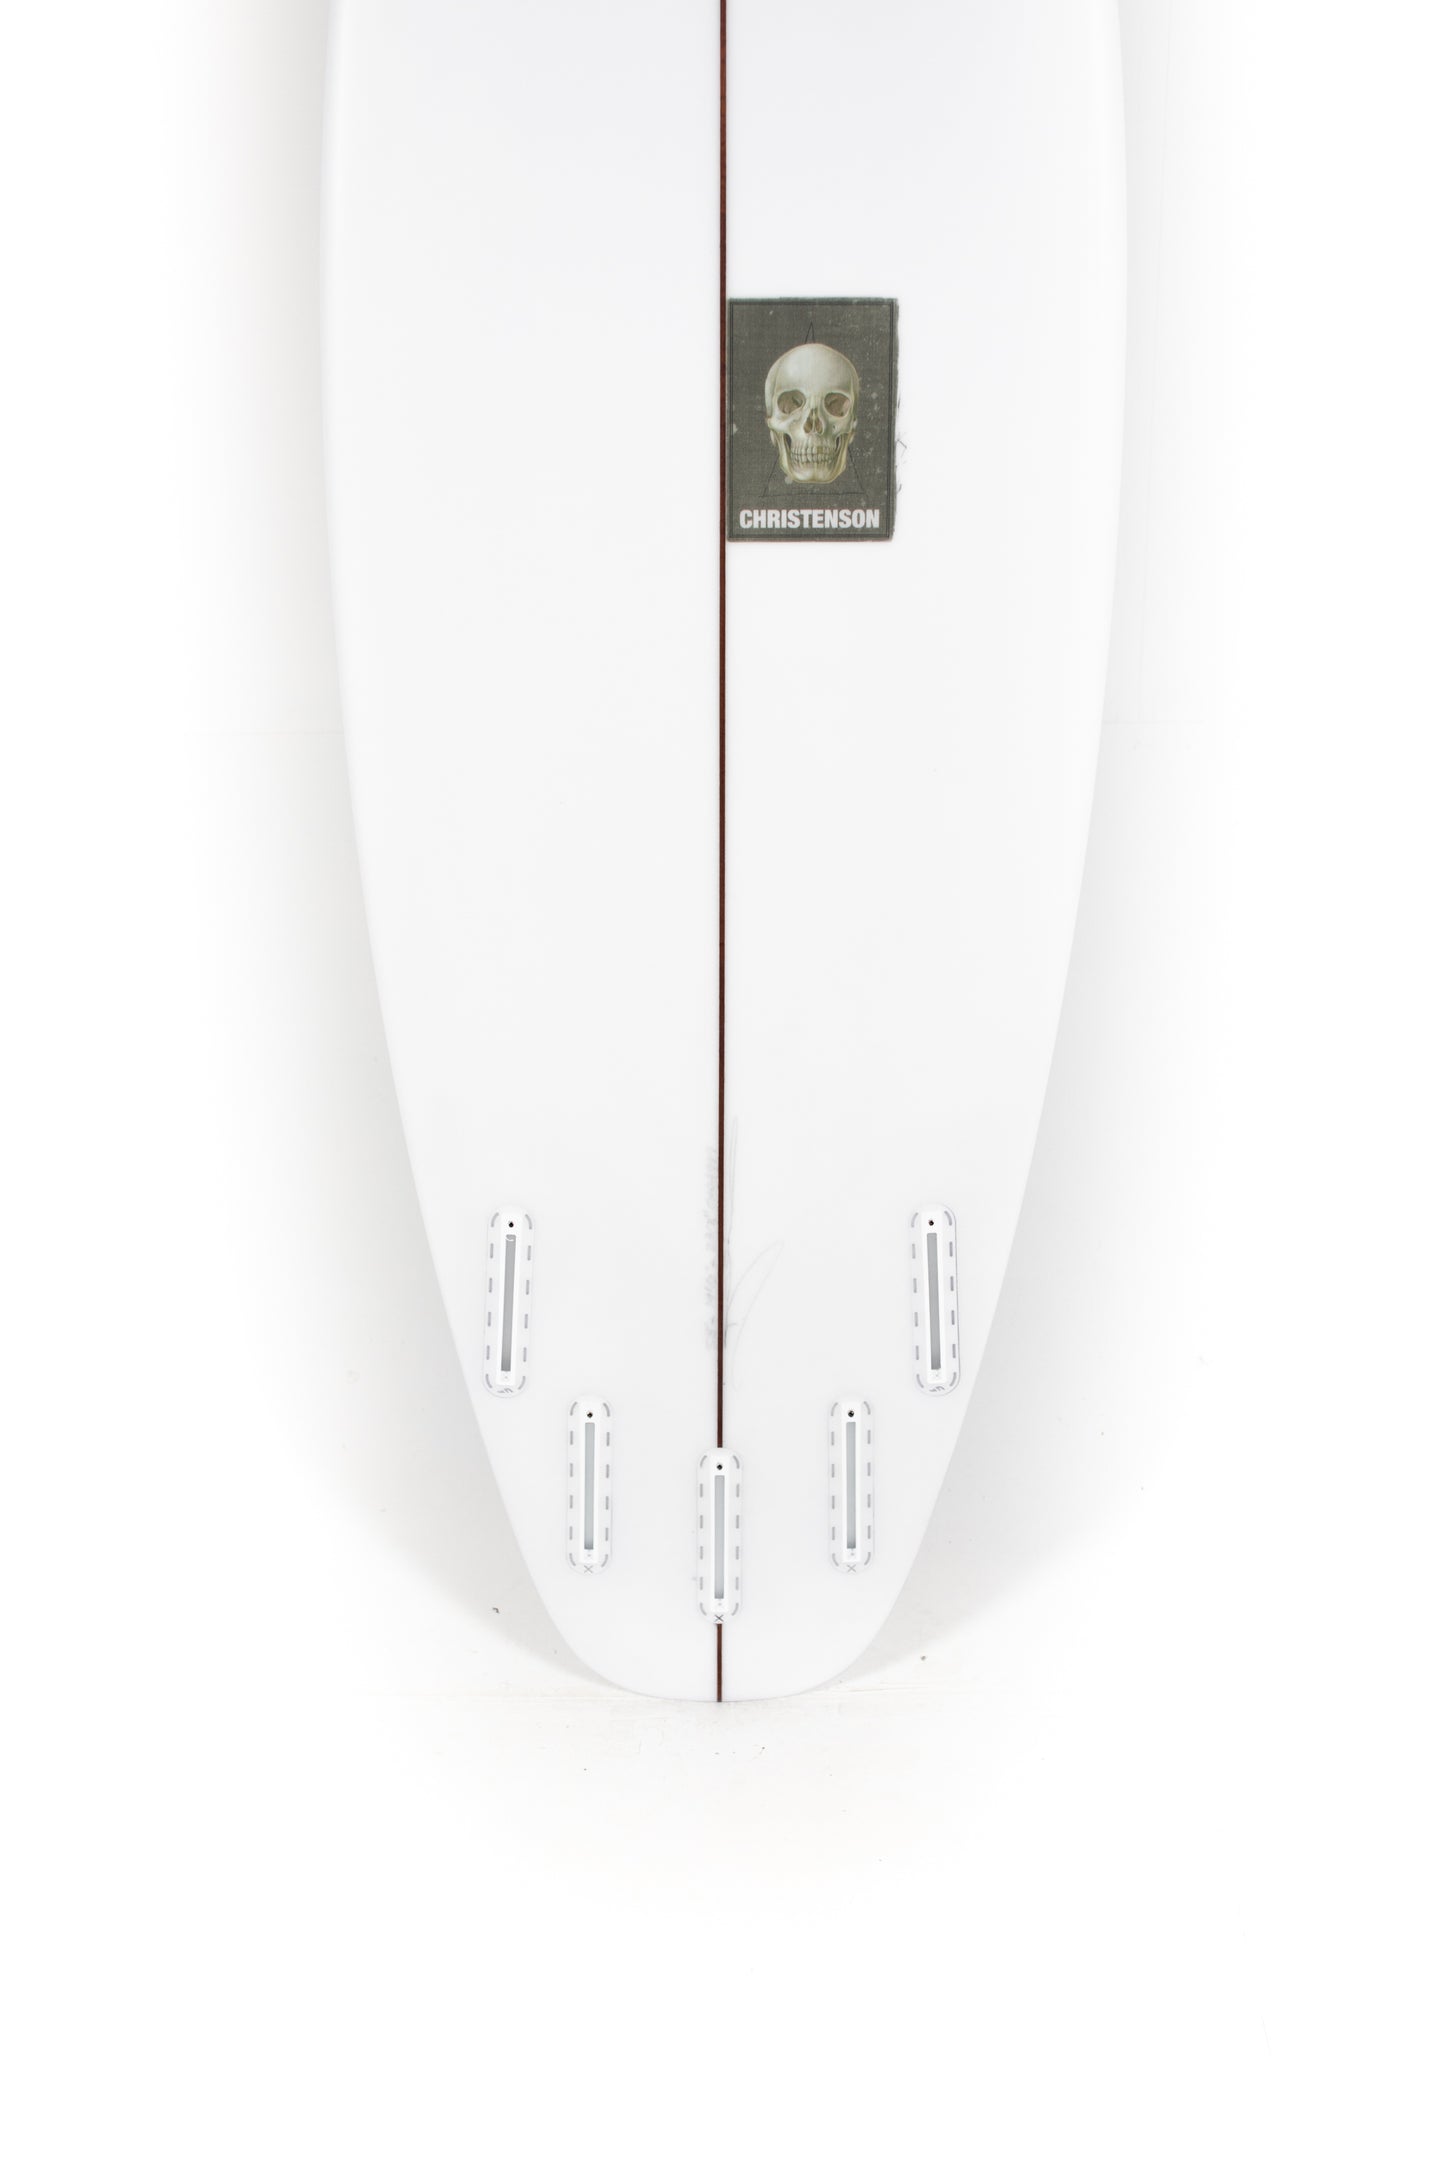 
                  
                    Pukas Surf Shop - Christenson Surfboard  - SURFER ROSA - 5'8” x 19 1/2 x 2 3/8 - CX04999Pukas Surf Shop - Christenson Surfboard  - SURFER ROSA - 5'8” x 19 1/2 x 2 3/8 - CX04999
                  
                